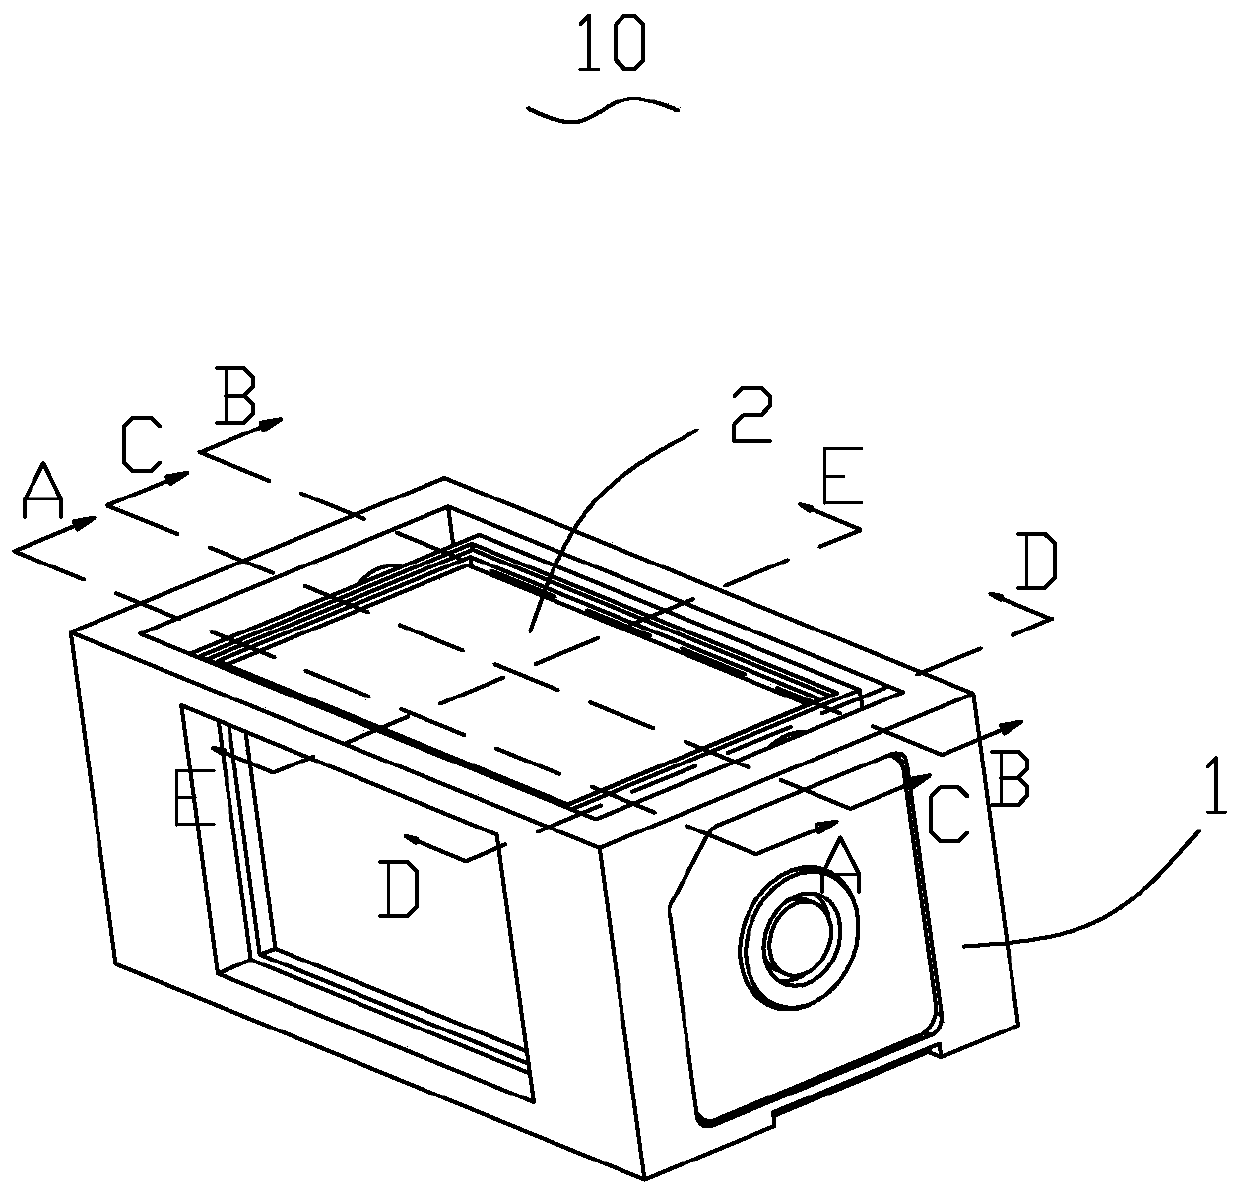 Prism module and periscope camera